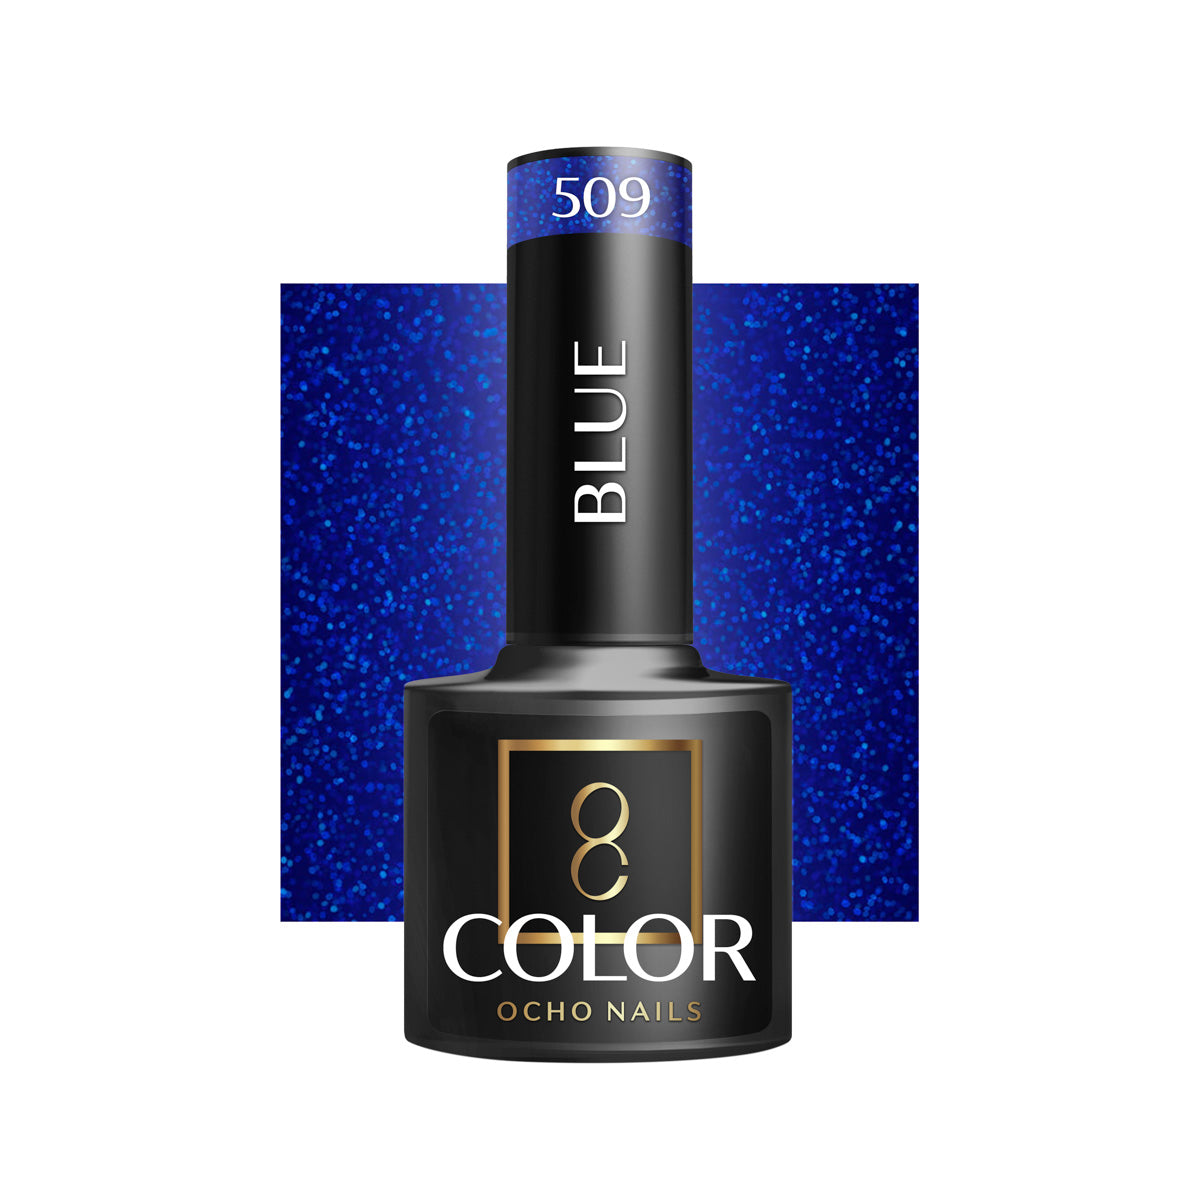 OCHO NAILS Hybride nagellak blauw 509 -5 g